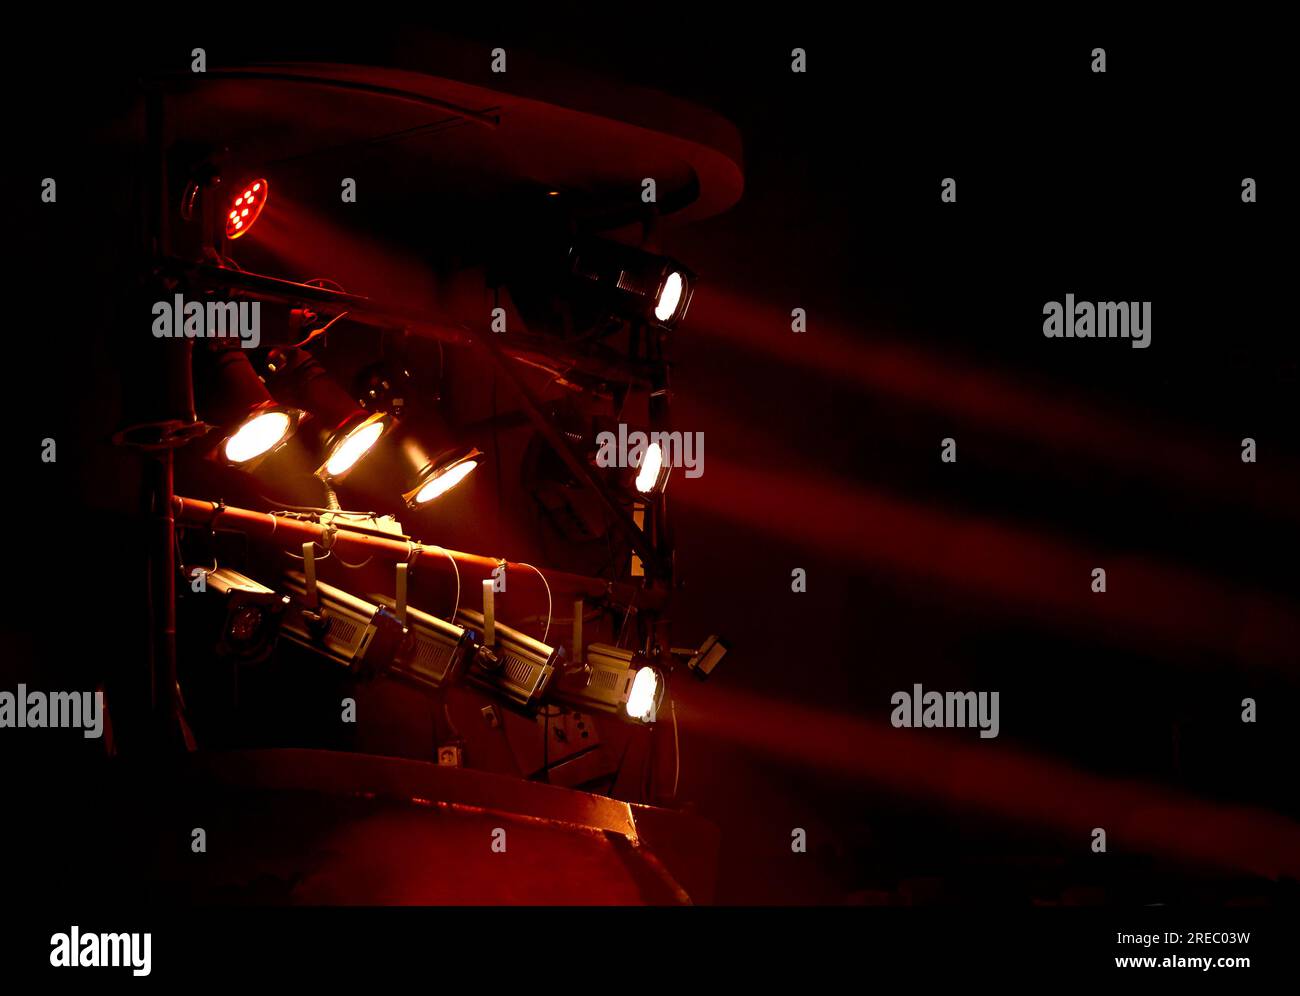 Abbildung: Theaterbox mit roten Scheinwerfern Stockfoto